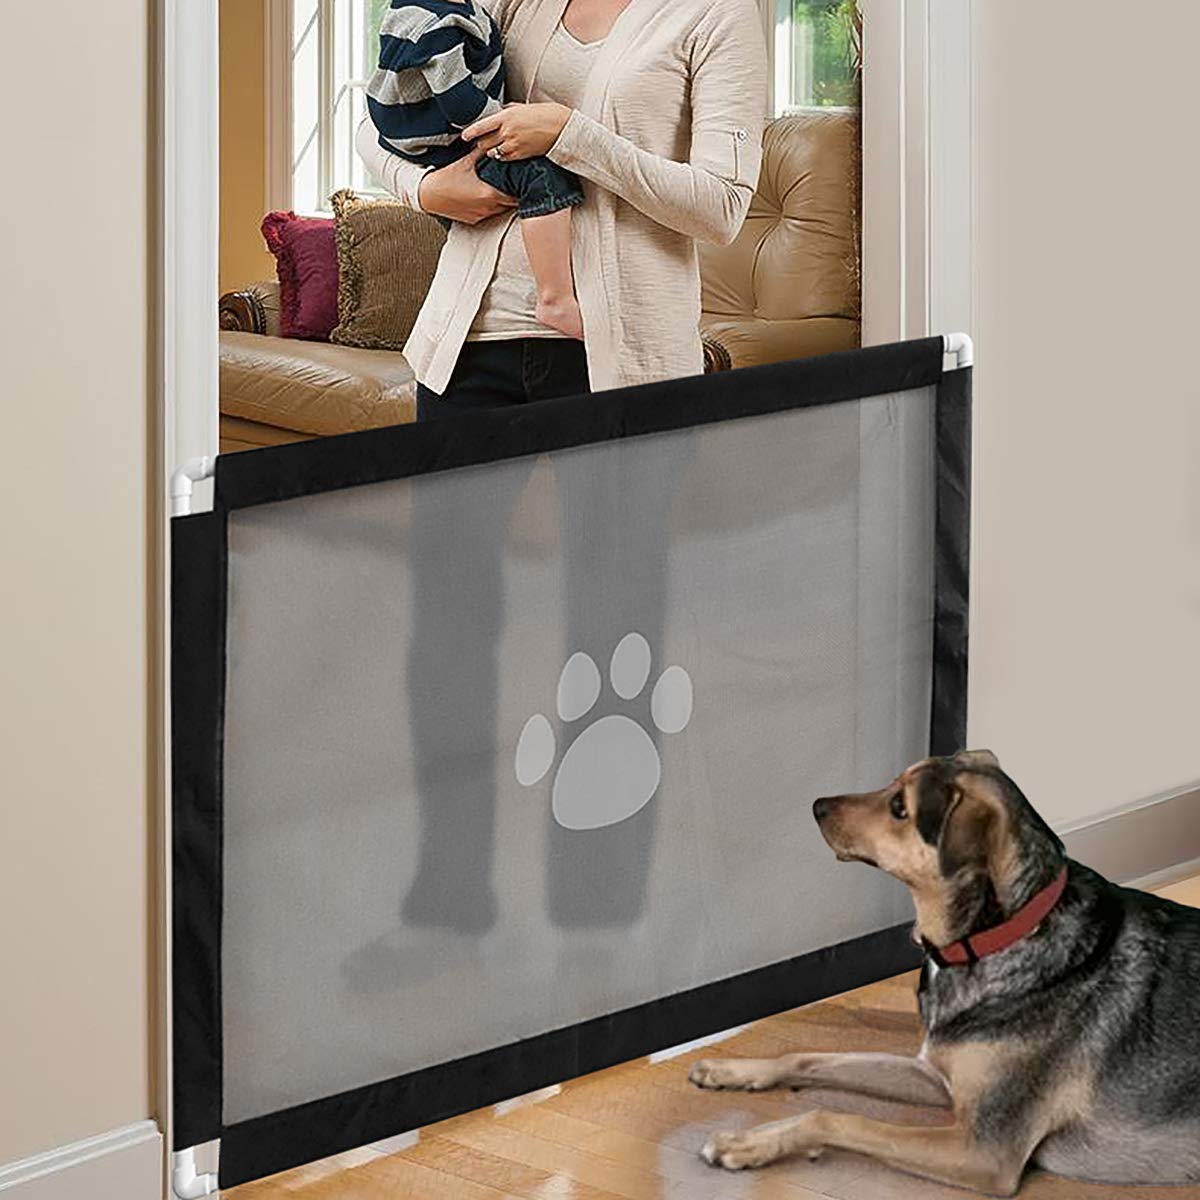 iPawde Magic Gate für Hund, tragbarer Hundesicherungsschutz, abschließbar Sicherer Schutz für Hunde Haustier Halten Sie Hunde von der Küche fern/Innen/Innen, 31,5"* 39,3"